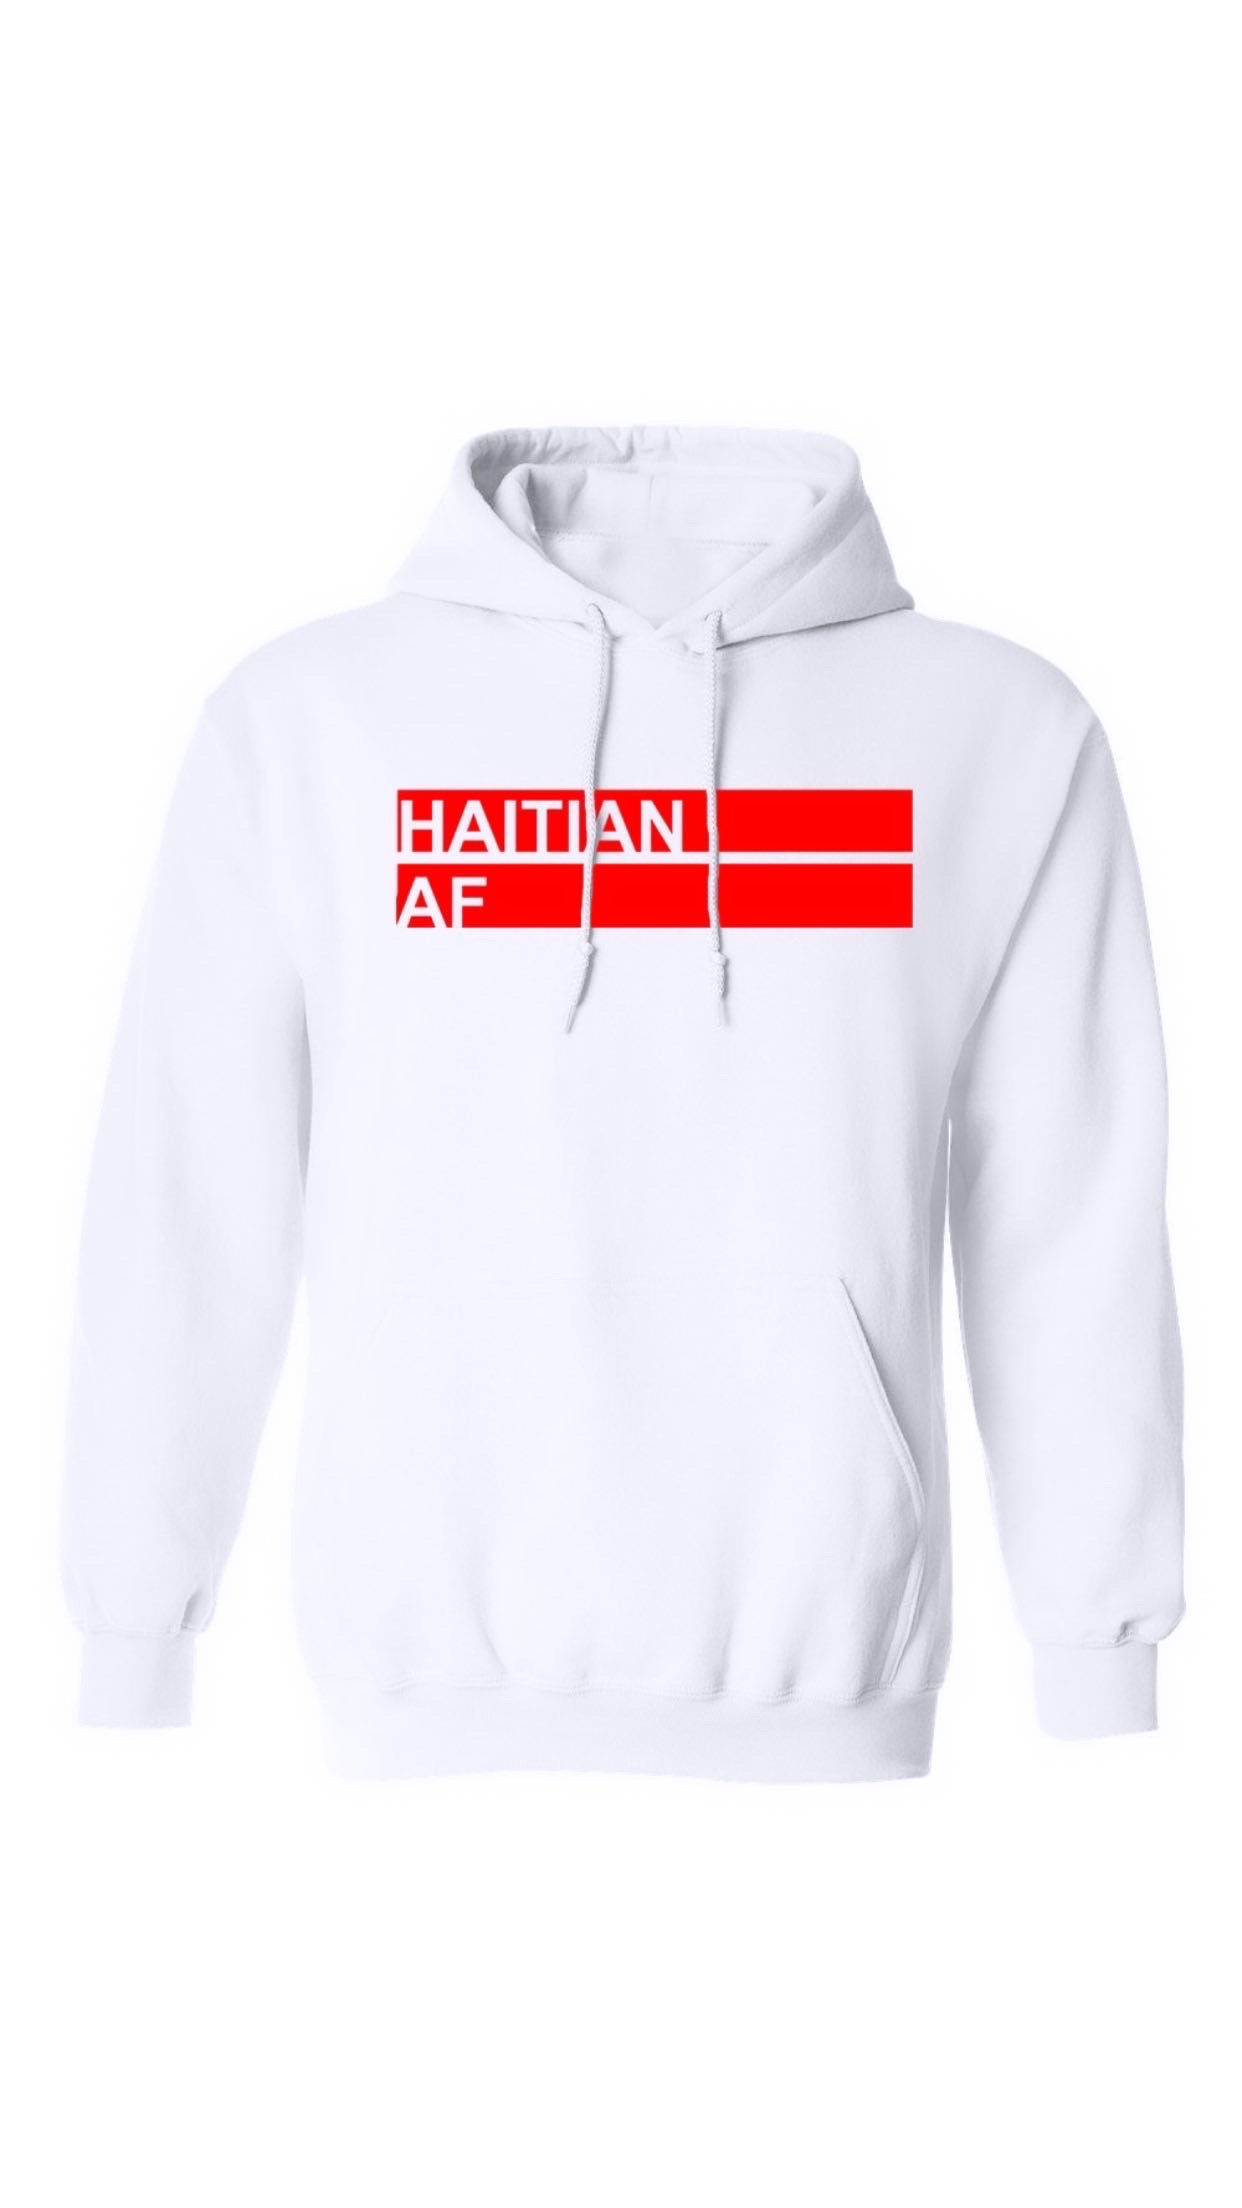 Haitian AF White & Red Hoodie